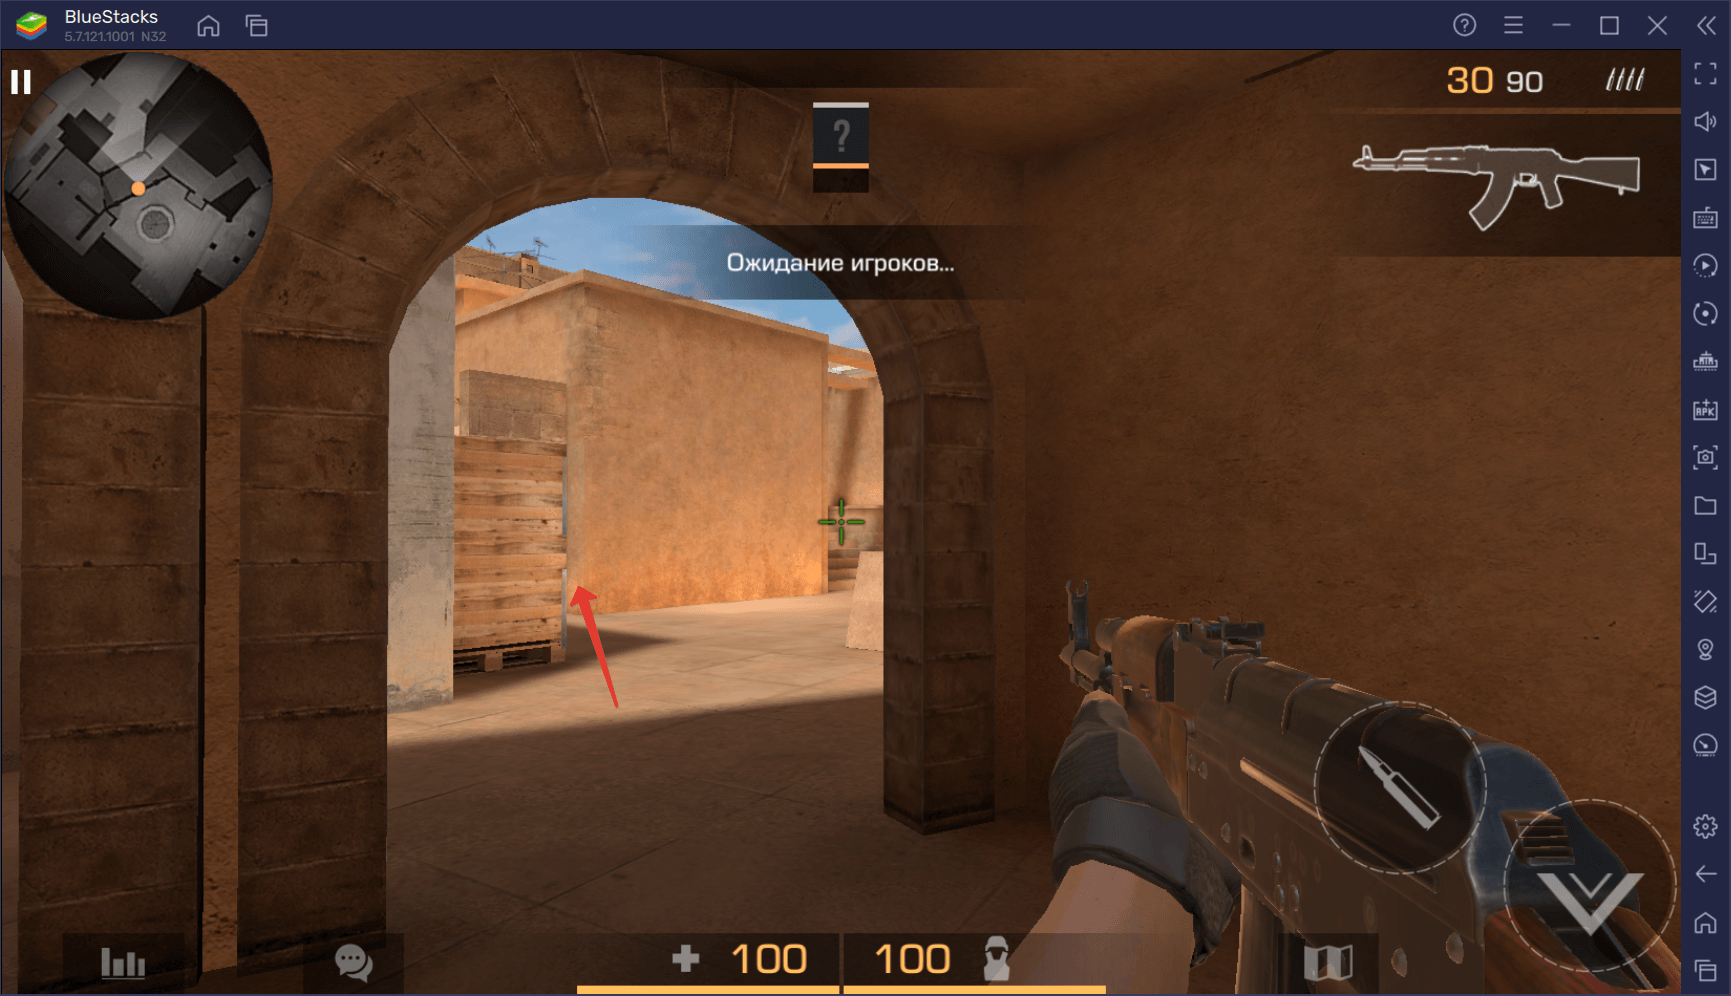 Гайд по игре за террористов на карте Sandstone в Standoff 2. Обзор эффективных тактик боя и выгодных позиций для стрельбы